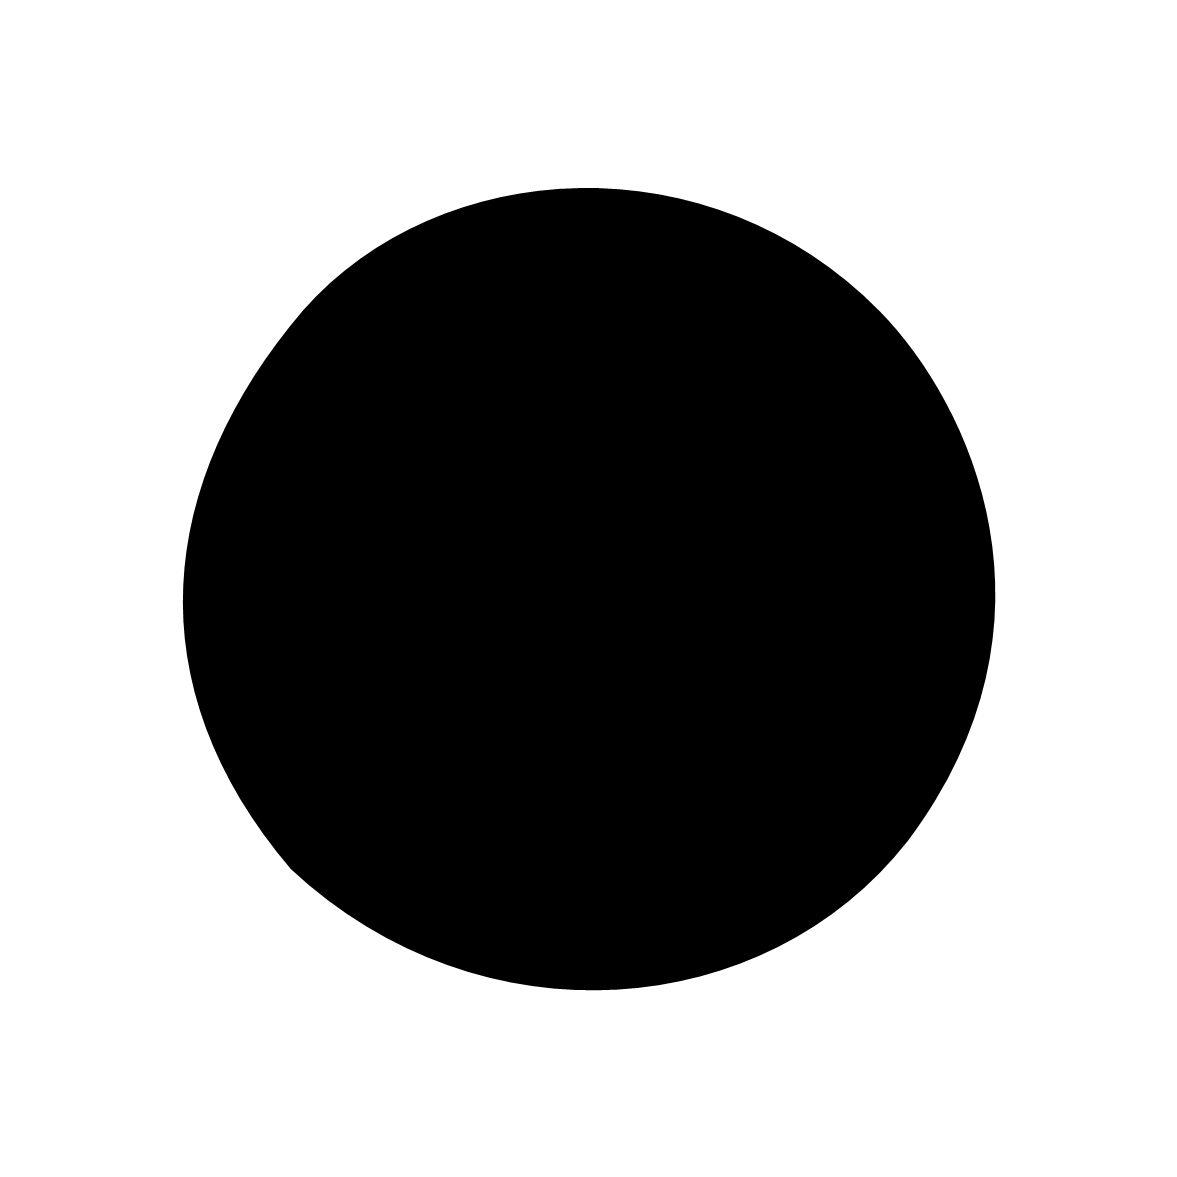 Moosgummidichtung rund | 4 mm Durchmesser | Farbe: schwarz